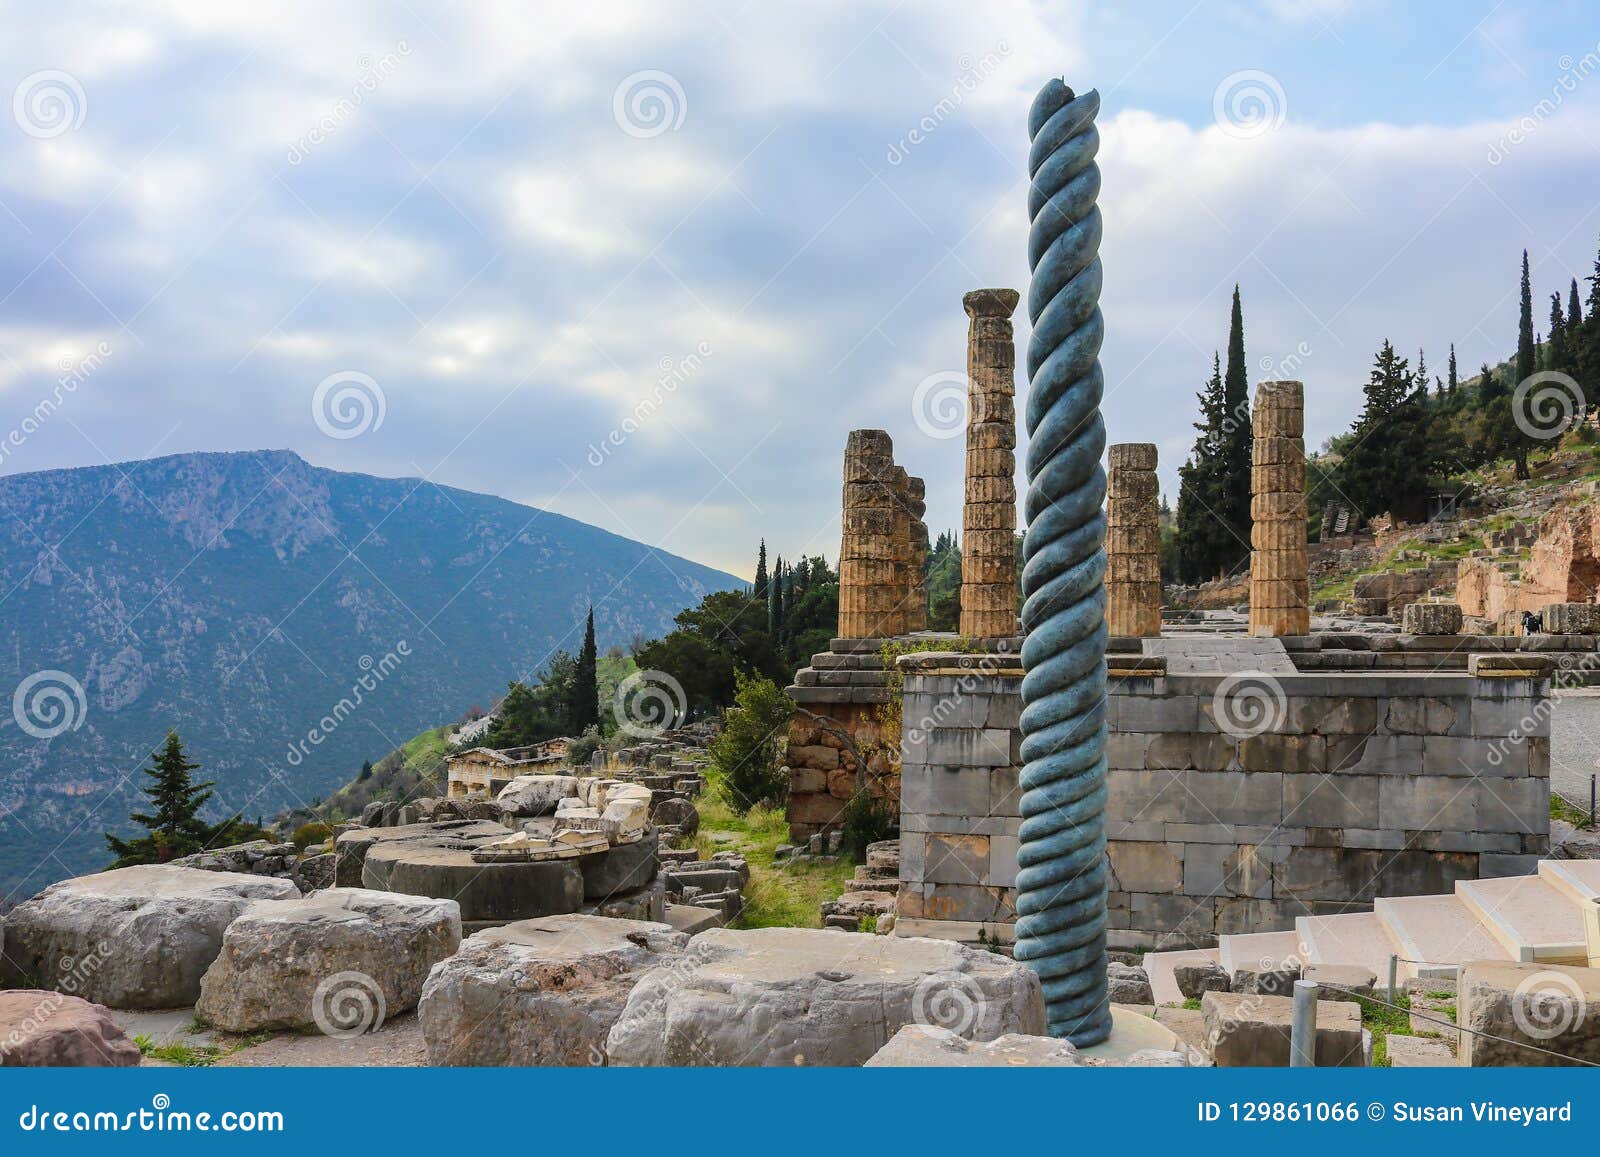 Vue de site de flanc de montagne de Delphi Greece antique avec la colonne tordue devant le temple d'Apollo avec un trésor en bas d'une colline et d'une montagne différente dans la distance à travers la vallée